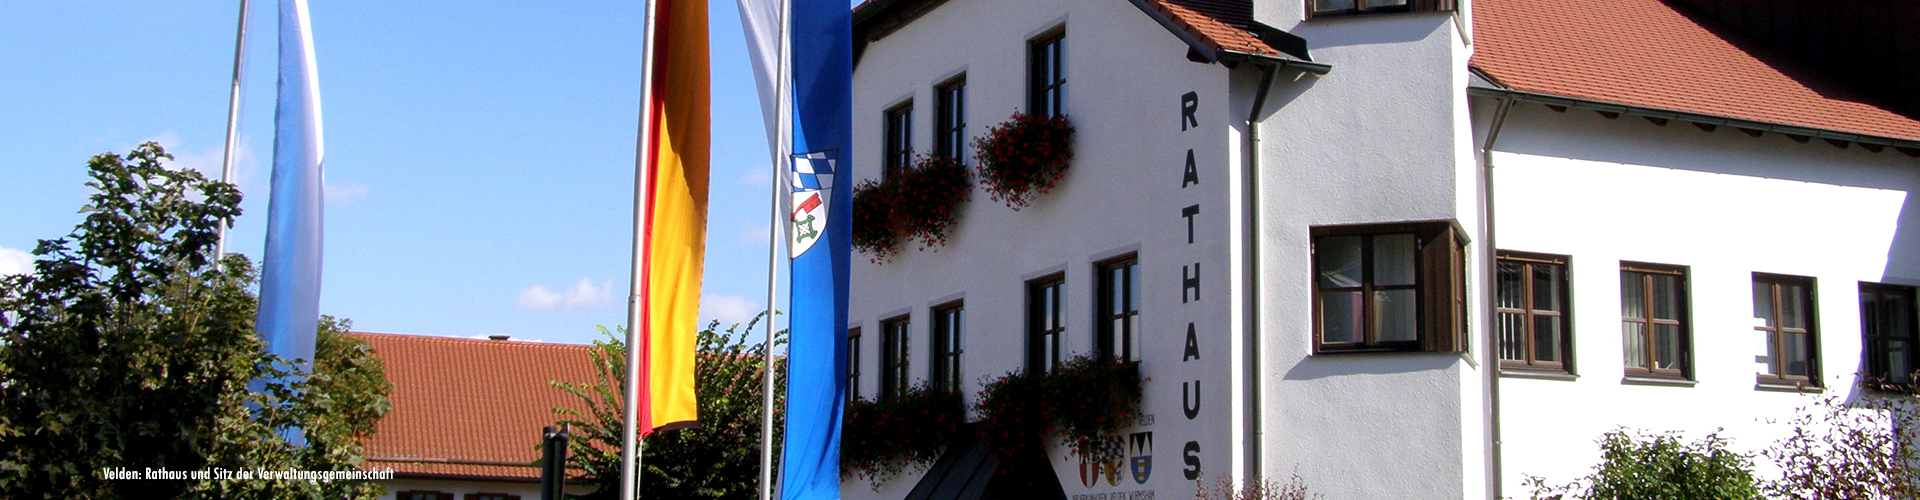 Rathaus Markt Velden, Sitz der Verwaltungsgemeinschaft